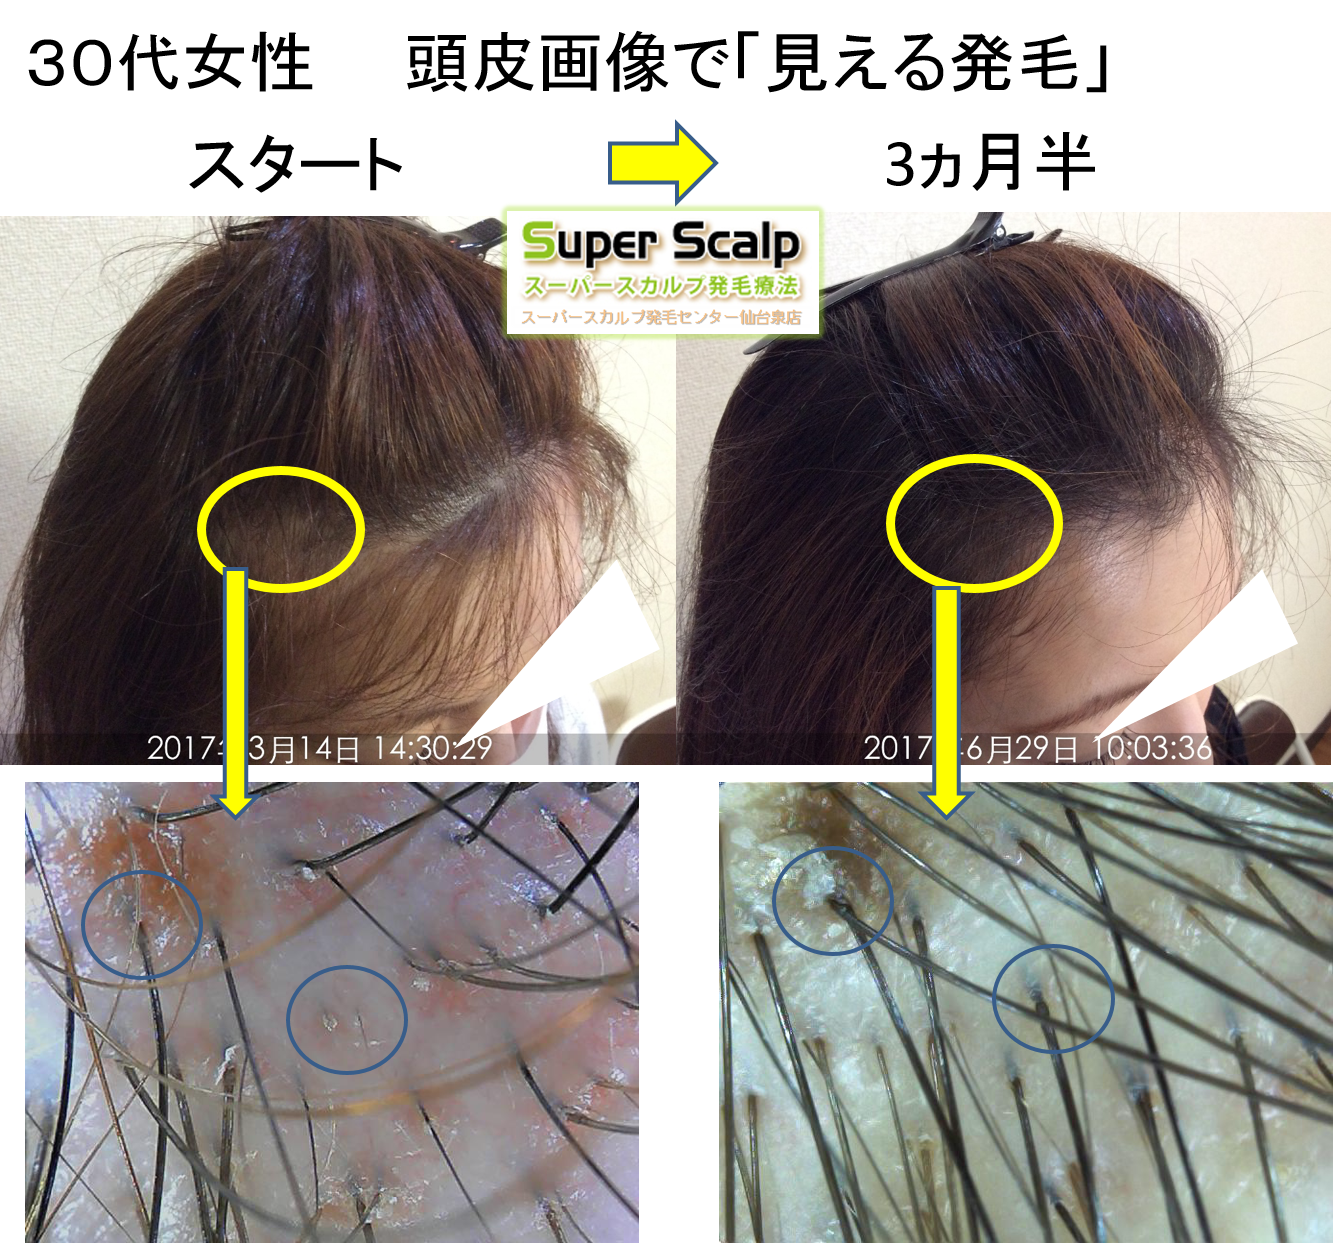 New症例！30代女性の薄毛が改善！当店は同じ毛穴ひとつレベルで改善経過を確認します。